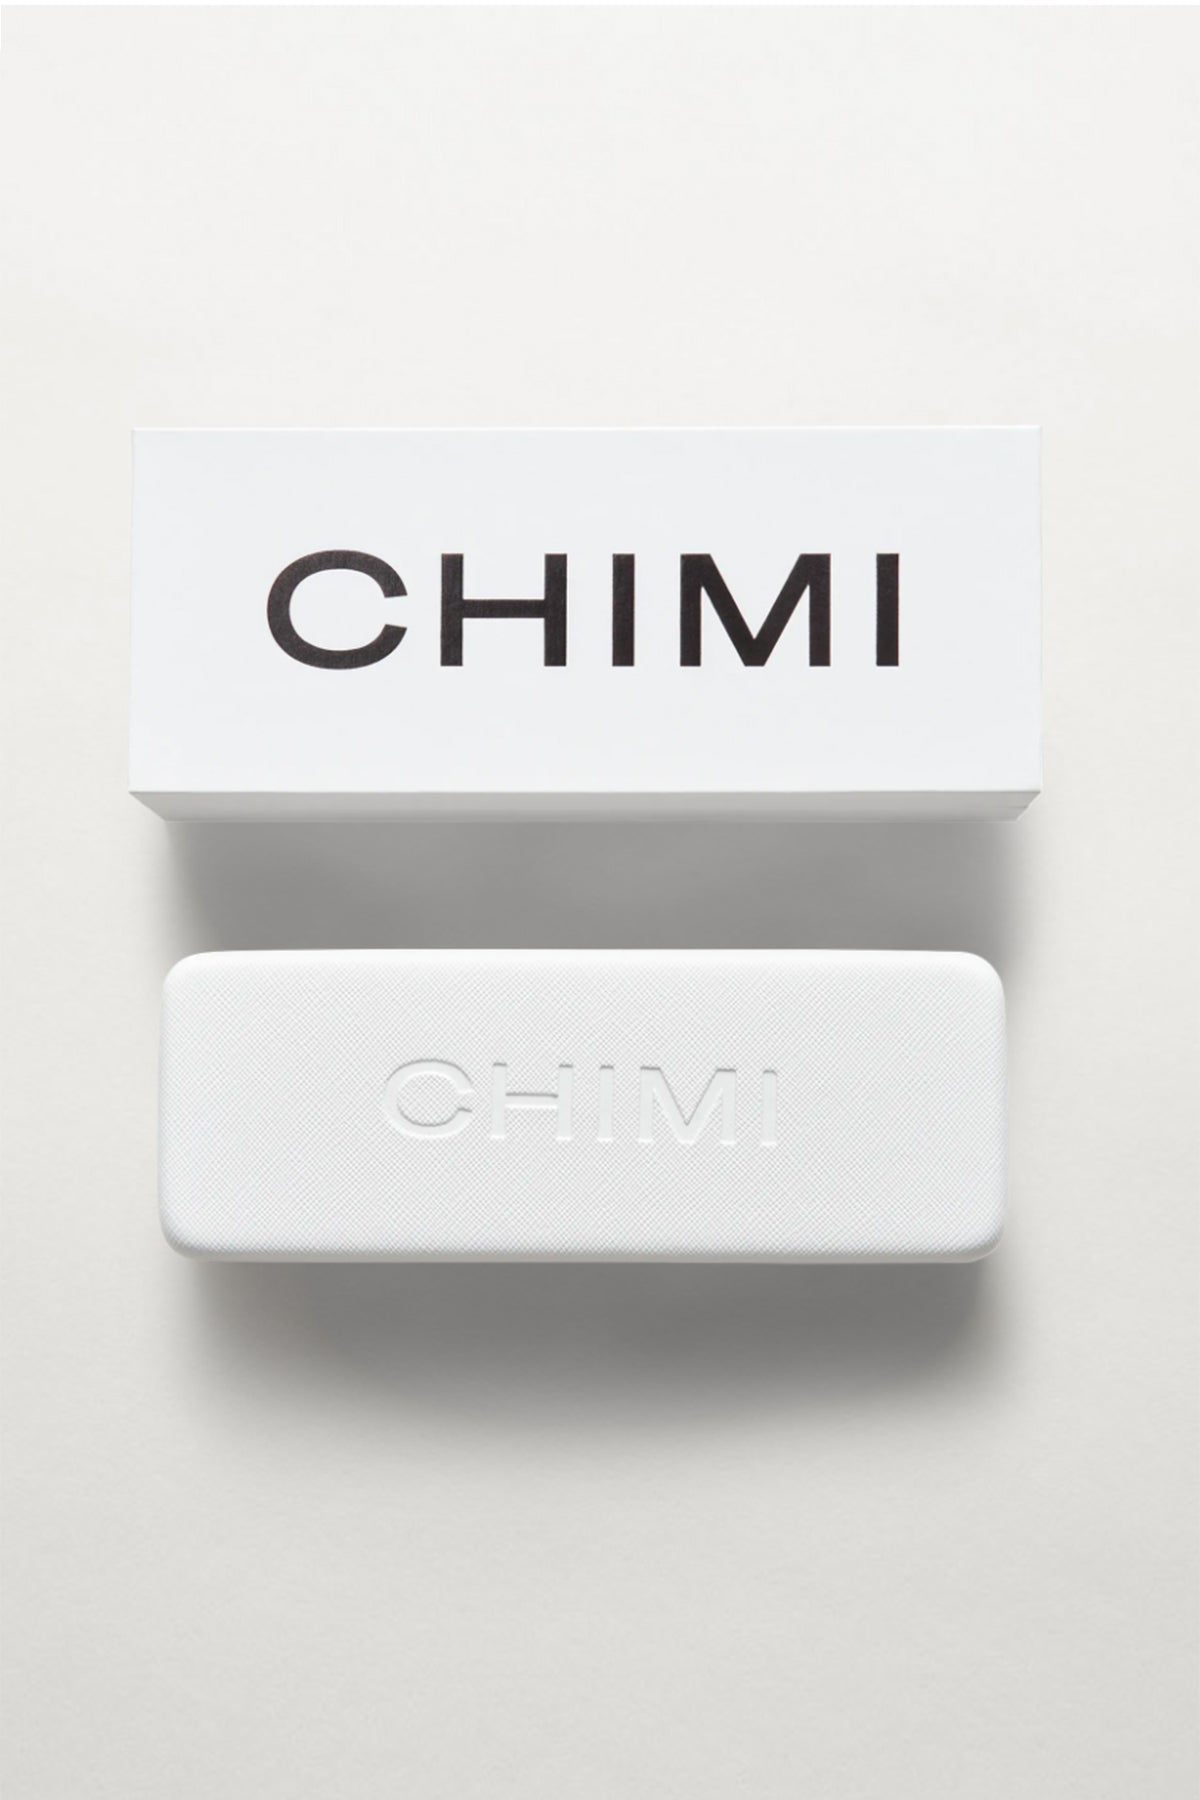 Chimi Sunglasses Case and Box-22132556136641